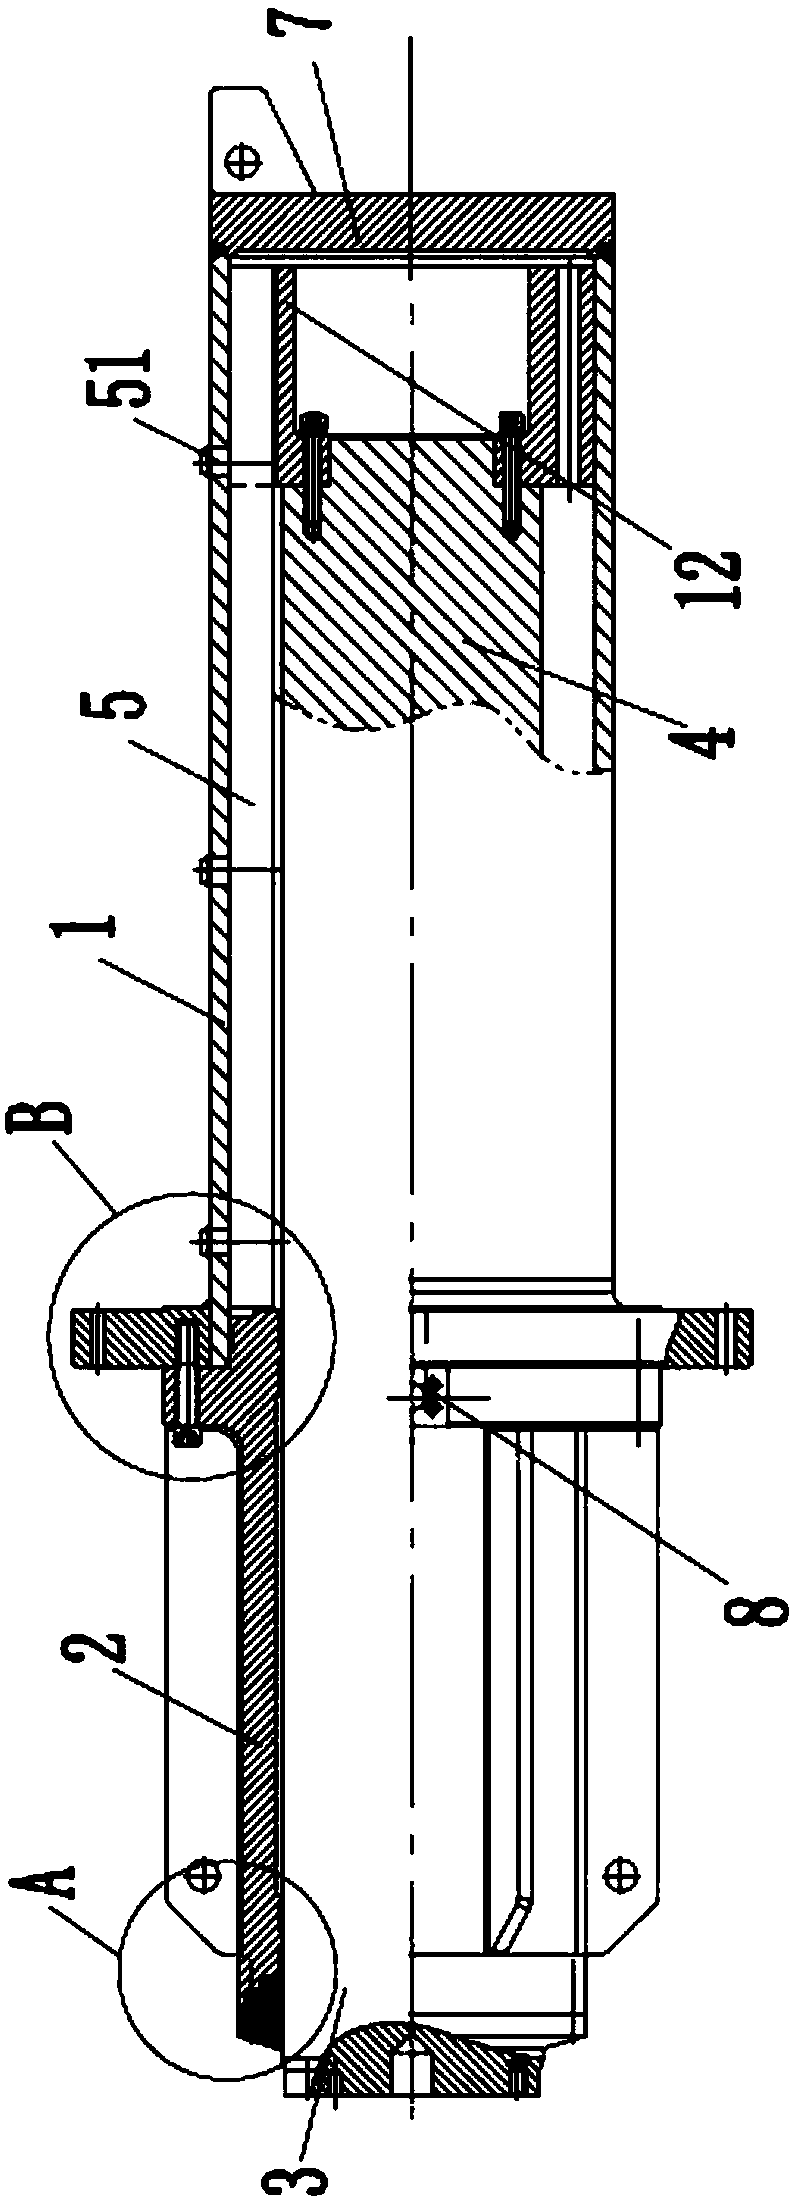 Casting oil cylinder